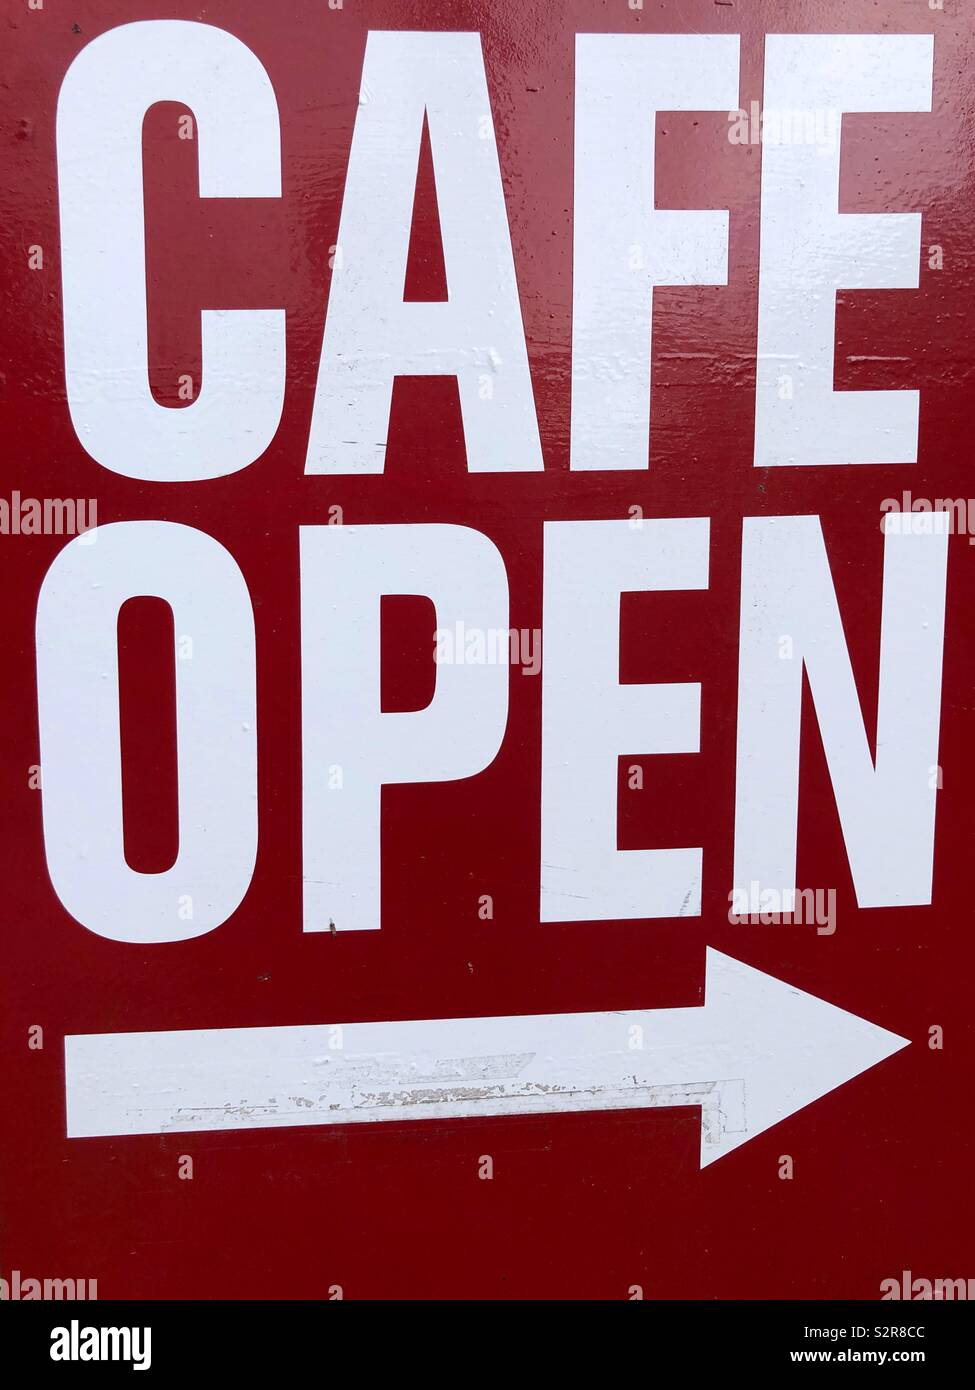 Cafetería abierta sign - letras mayúsculas blancas sobre fondo rojo, pintados con la flecha apuntando a la derecha Foto de stock